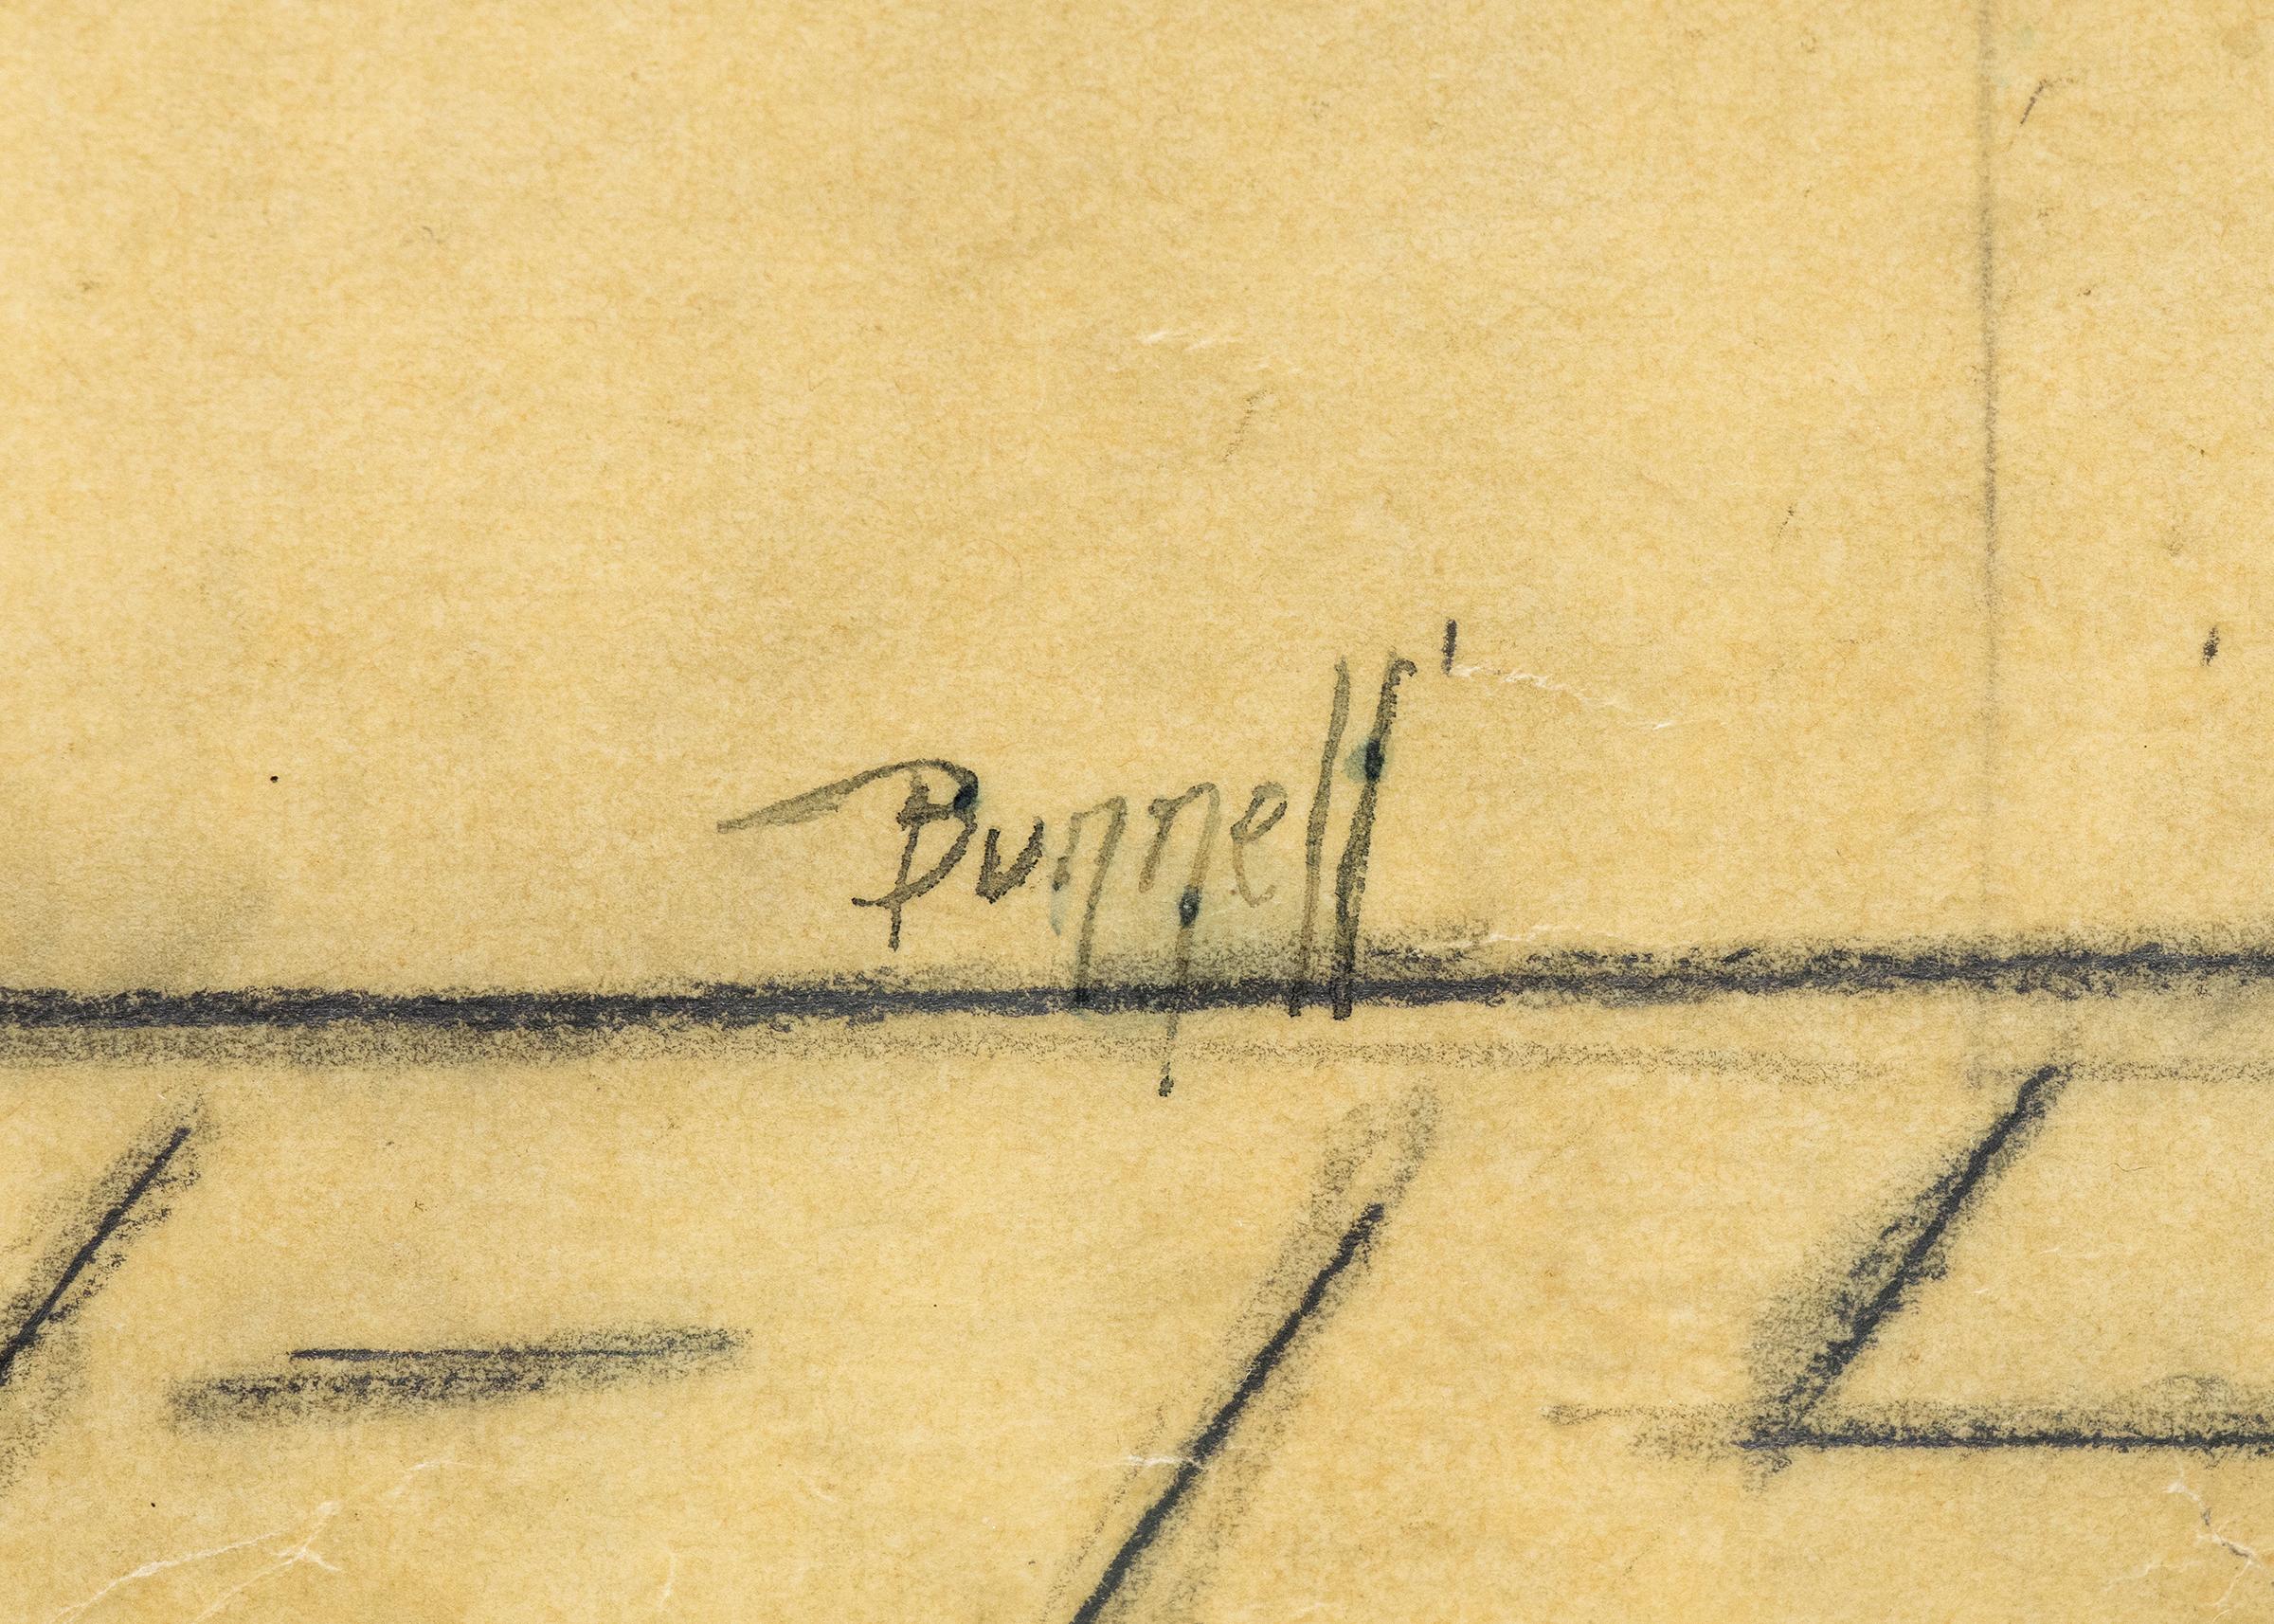 Dessin au graphite sur papier de maisons sur une colline par Charles Ragland Bunnell (1897-1968) vers 1935. Présenté dans un cadre en bois dur personnalisé avec tous les matériaux d'archivage et un verre anti-UV ; les dimensions extérieures mesurent